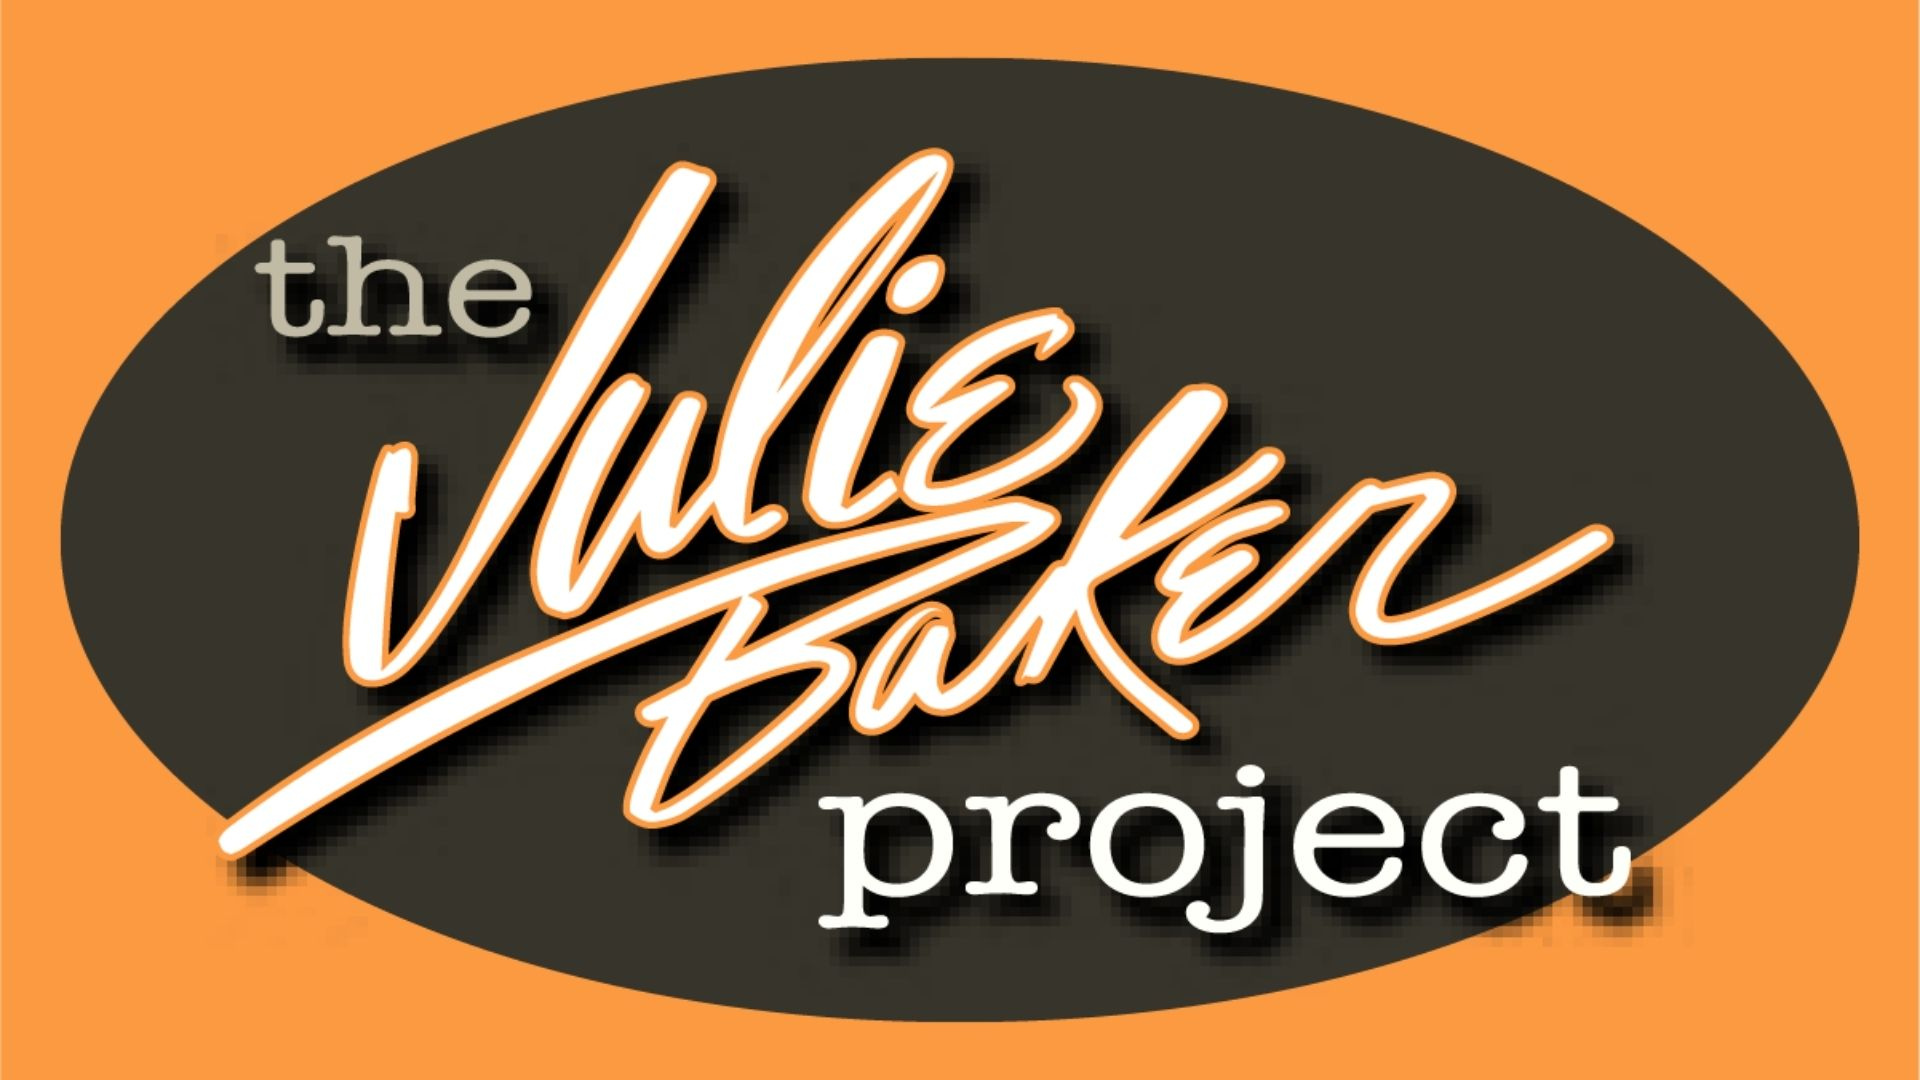 Julie Baker Project